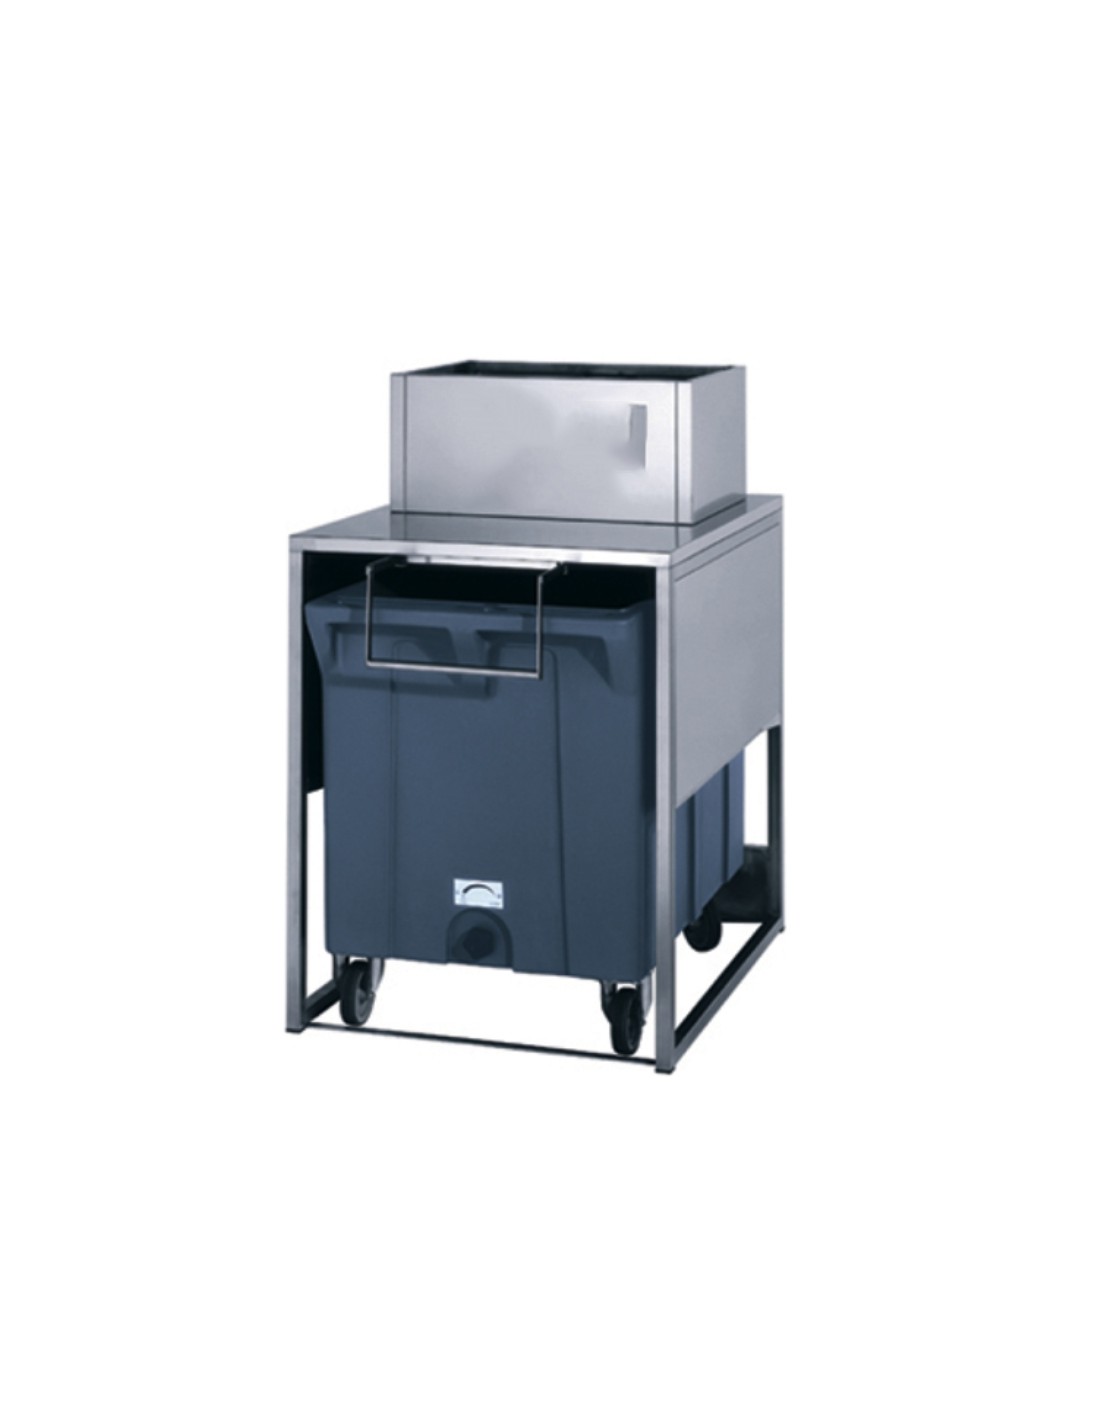 Contenedor de hielo - Capacidad de contenedores Kg 108 - Reserva Kg 17 - Dimensiones cm 79,5 x 106 x 128,4 h